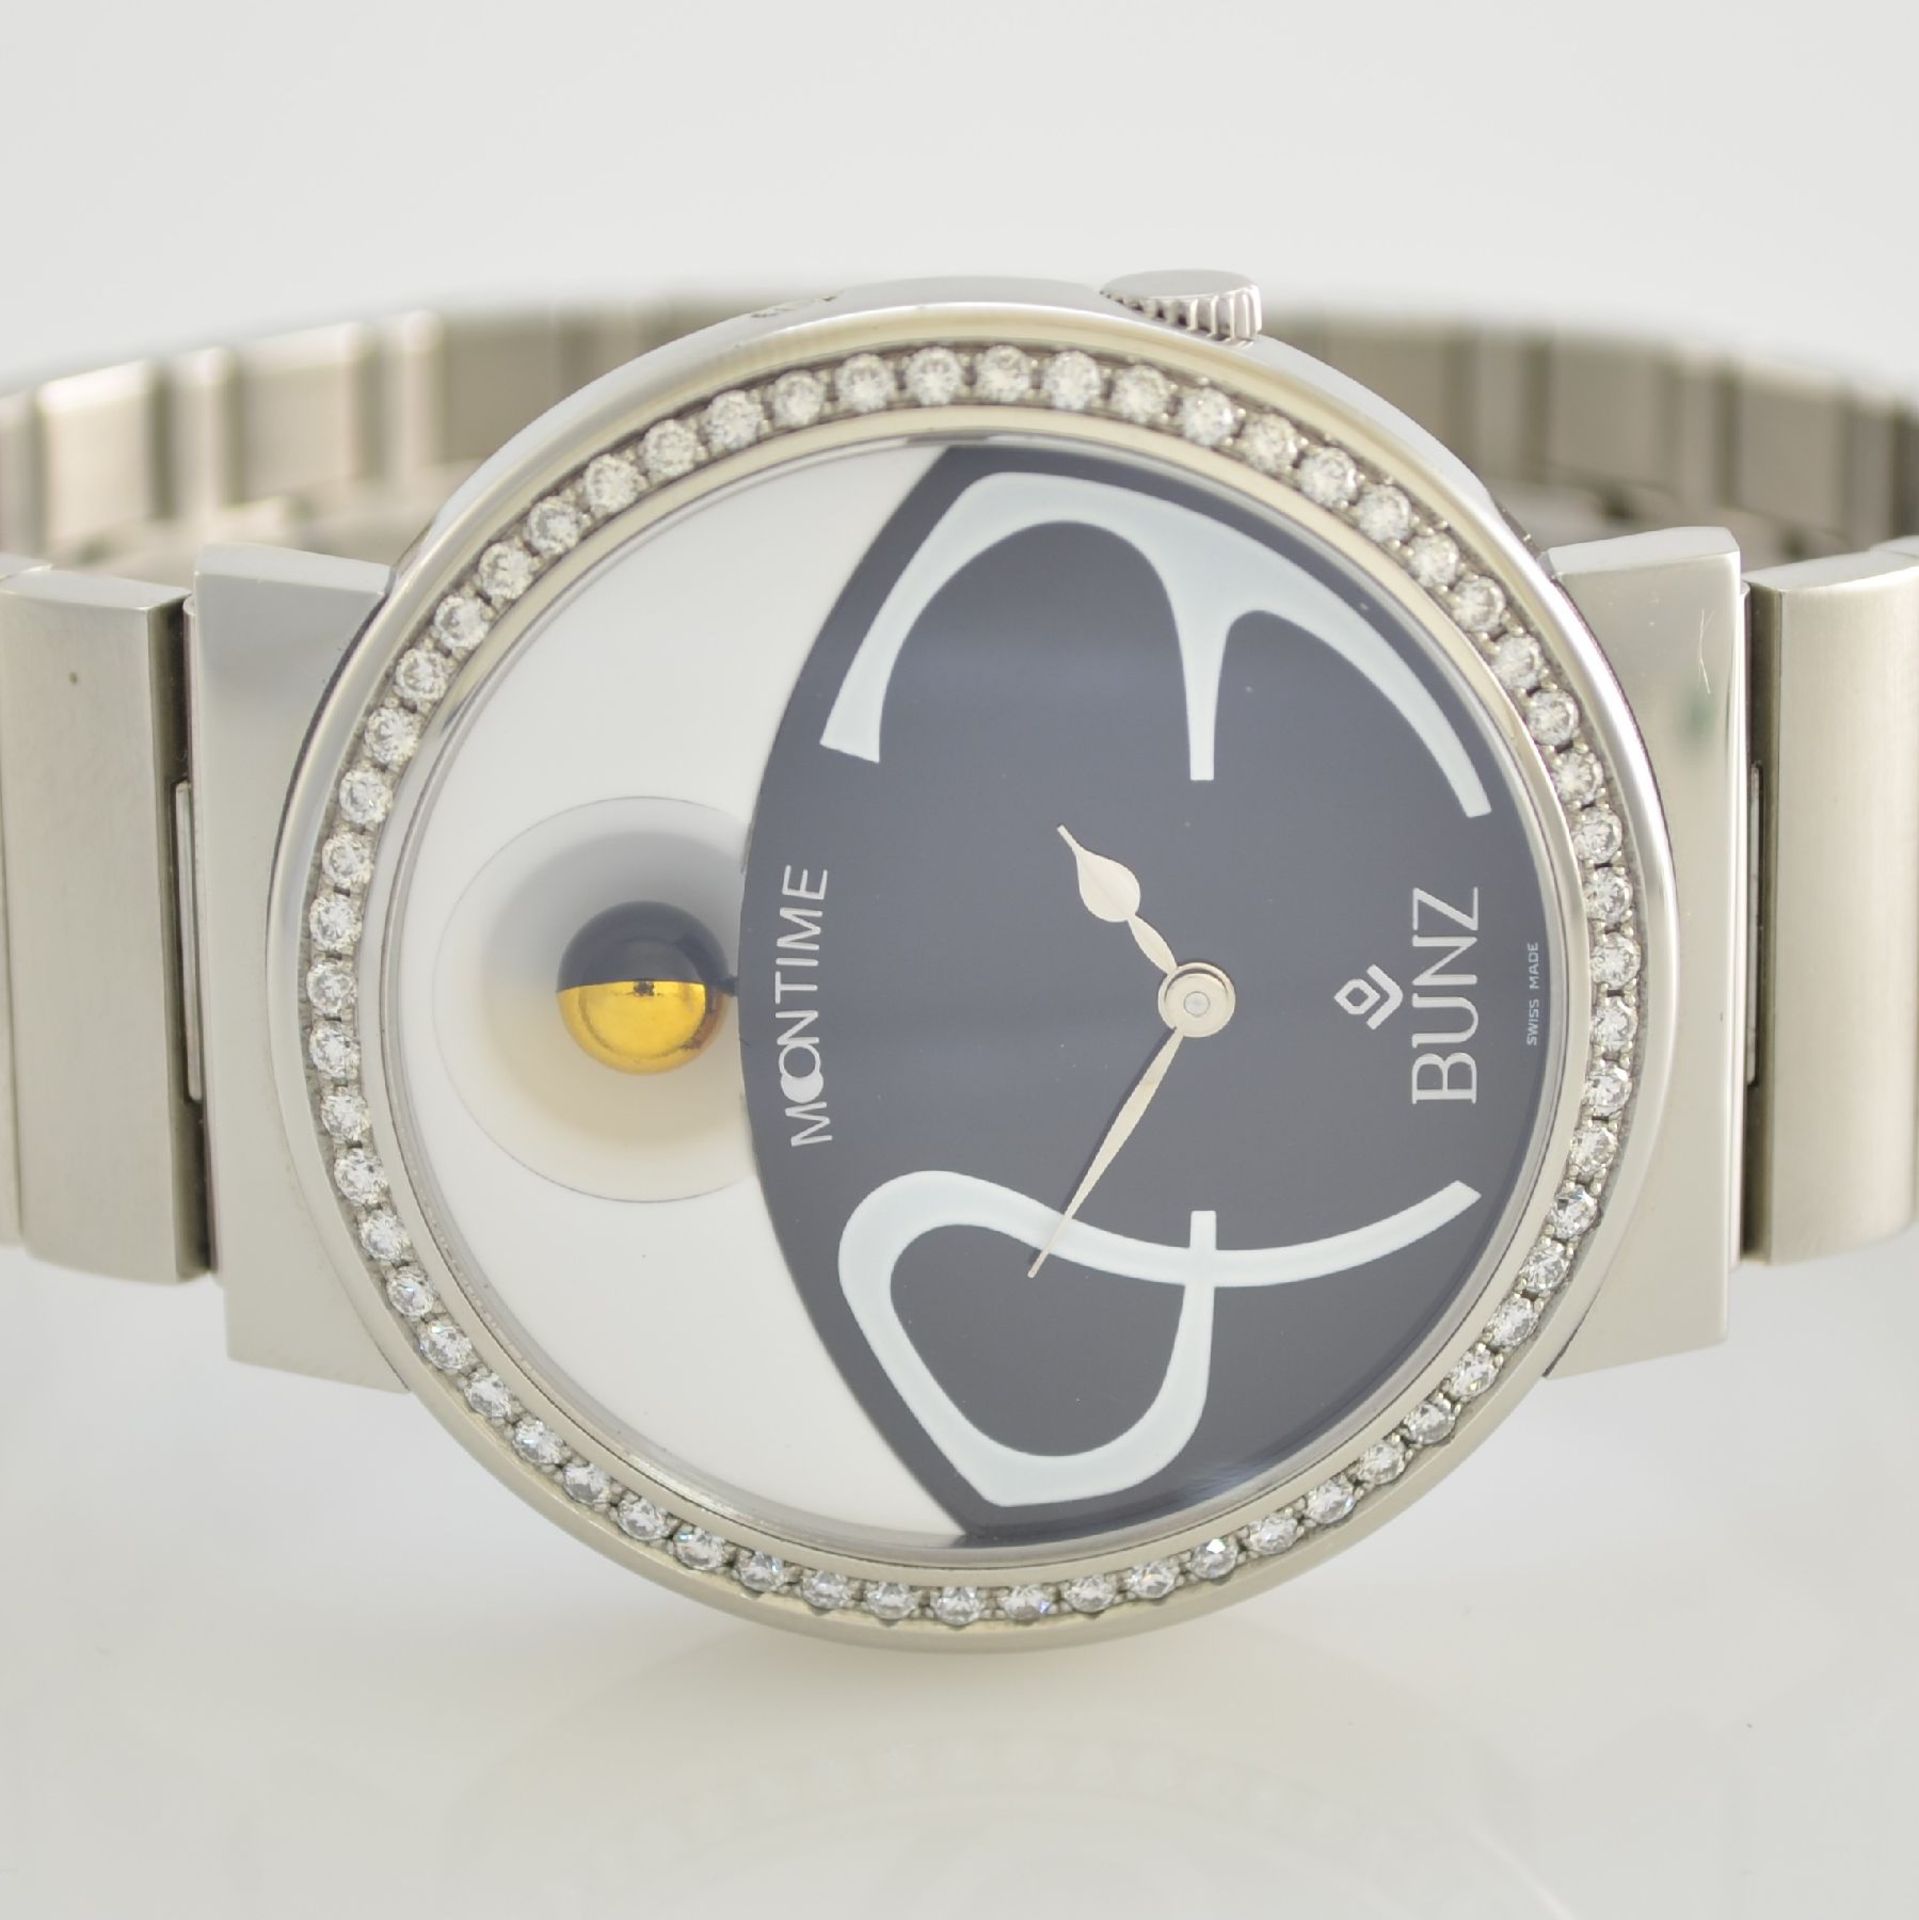 BUNZ Moontime unusual big ladies wristwatch with moon phase & diamonds, Switzerland around 2005, - Bild 2 aus 7